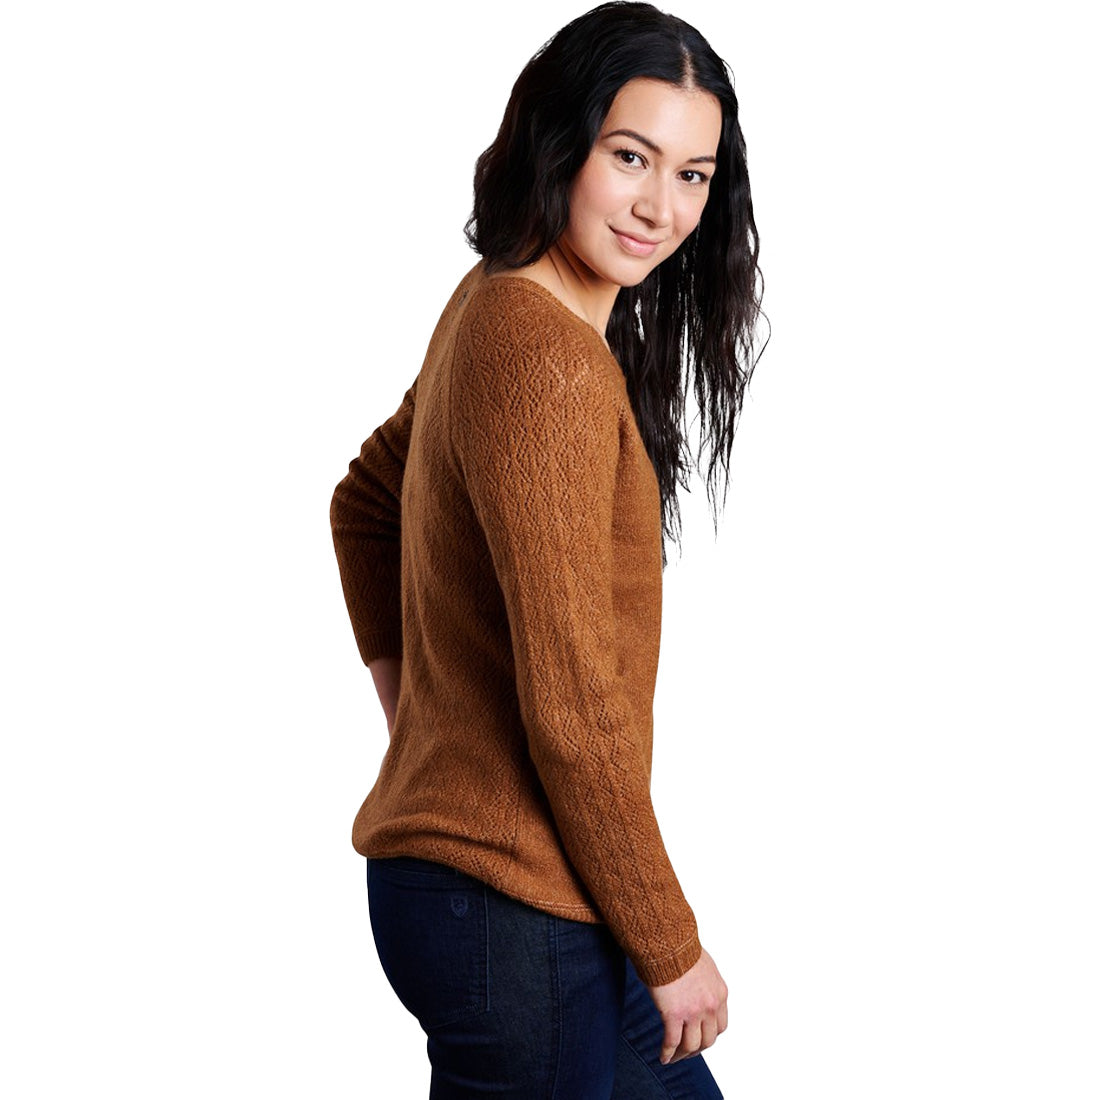 KUHL Sonata Pointelle Sweater - Women's